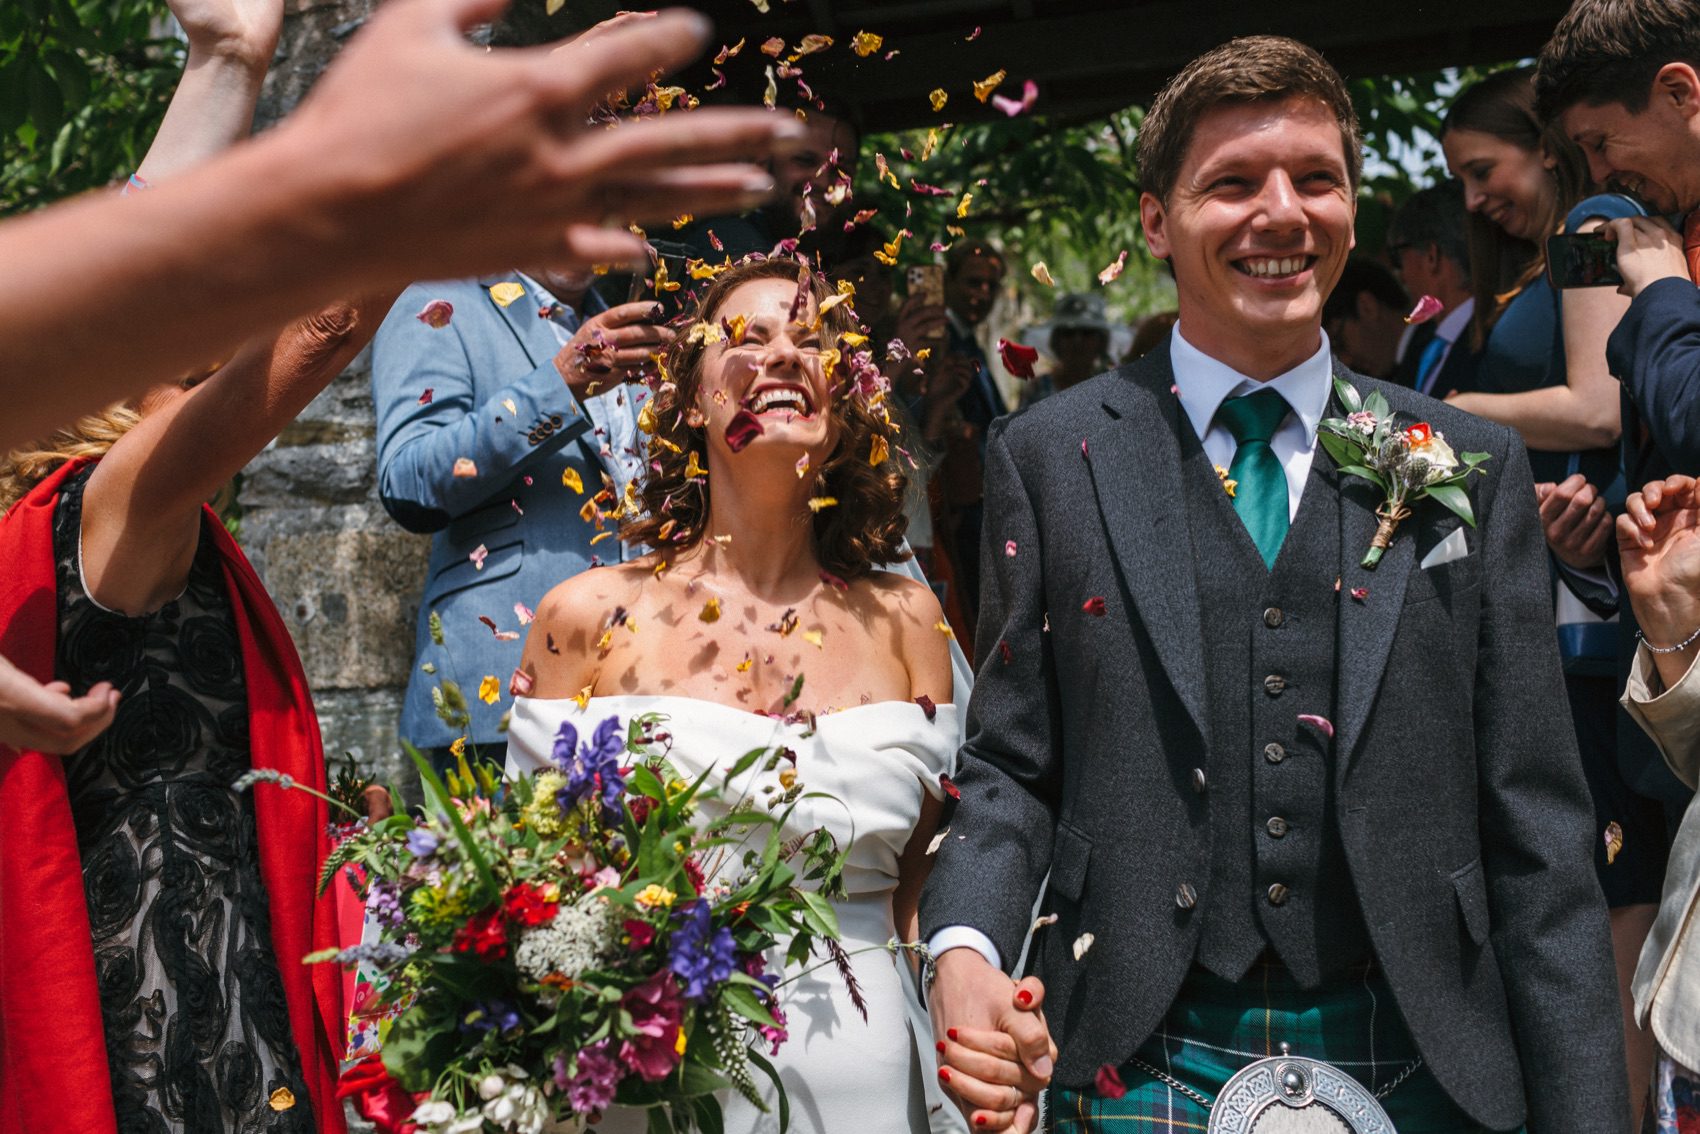 Get great confetti shots - wedding photographer devon